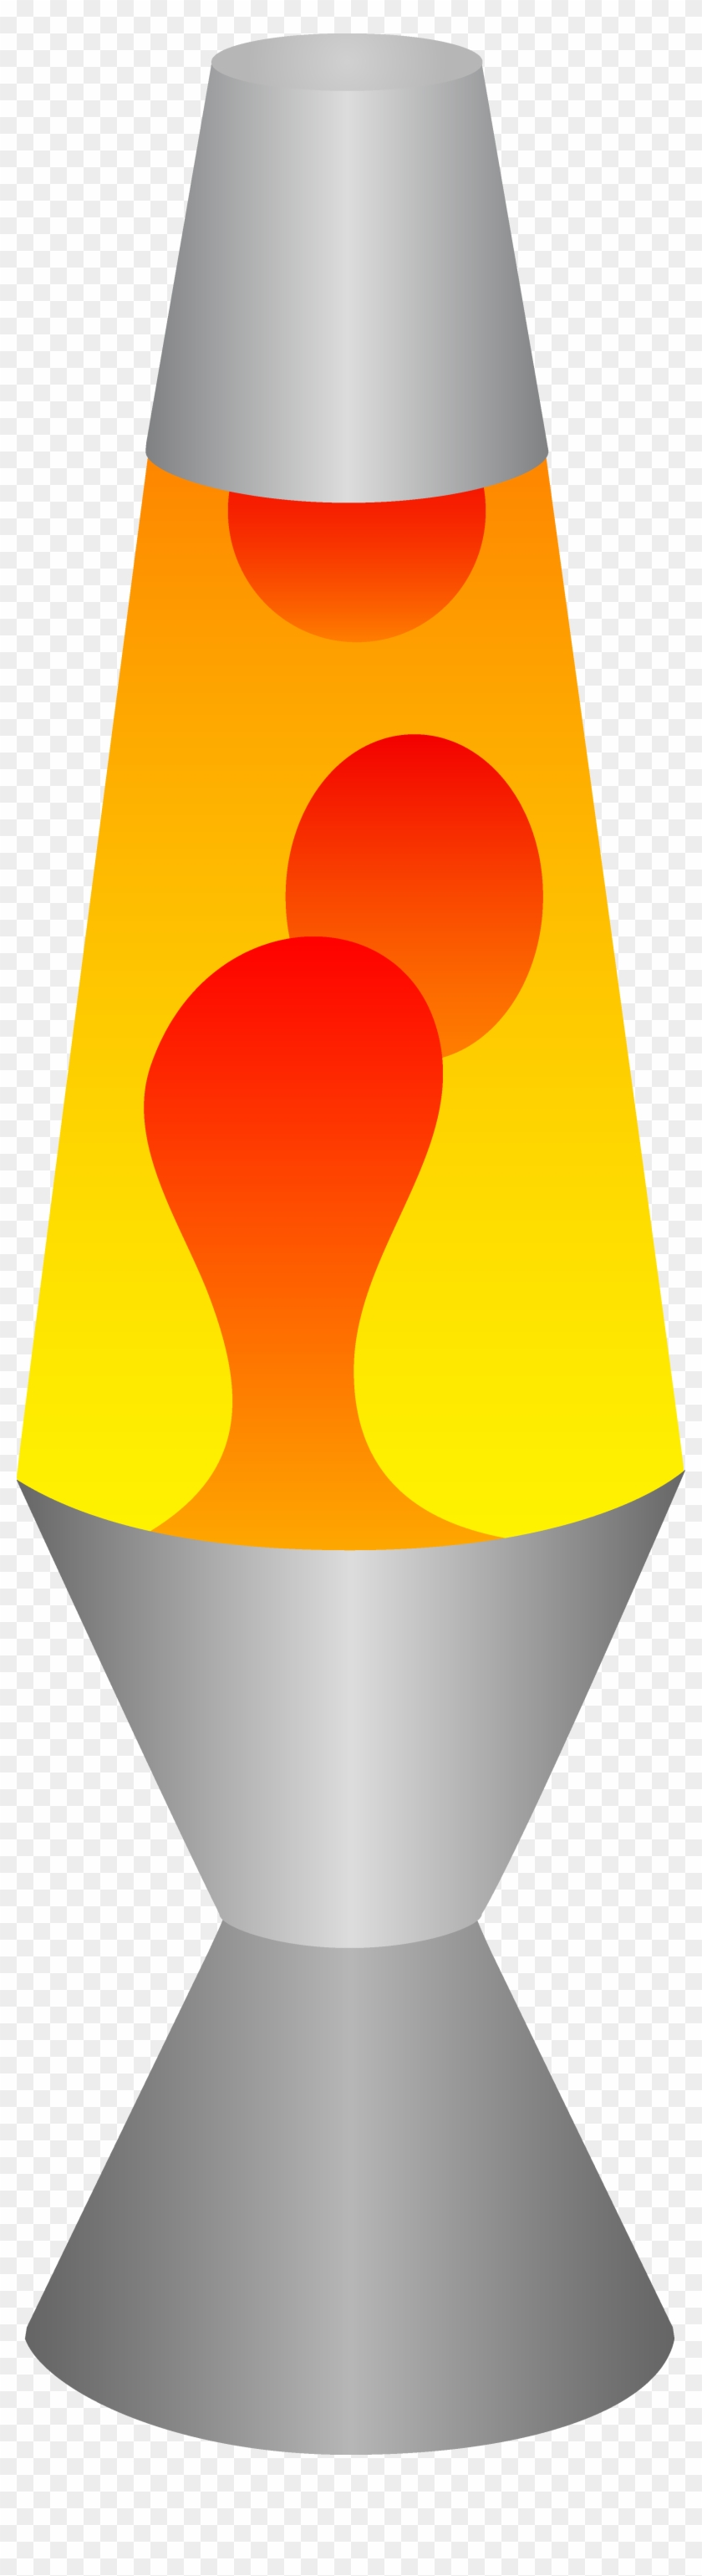 Lamp Clipart Transparent - 1970s Lava Lamp Clip Art #593153